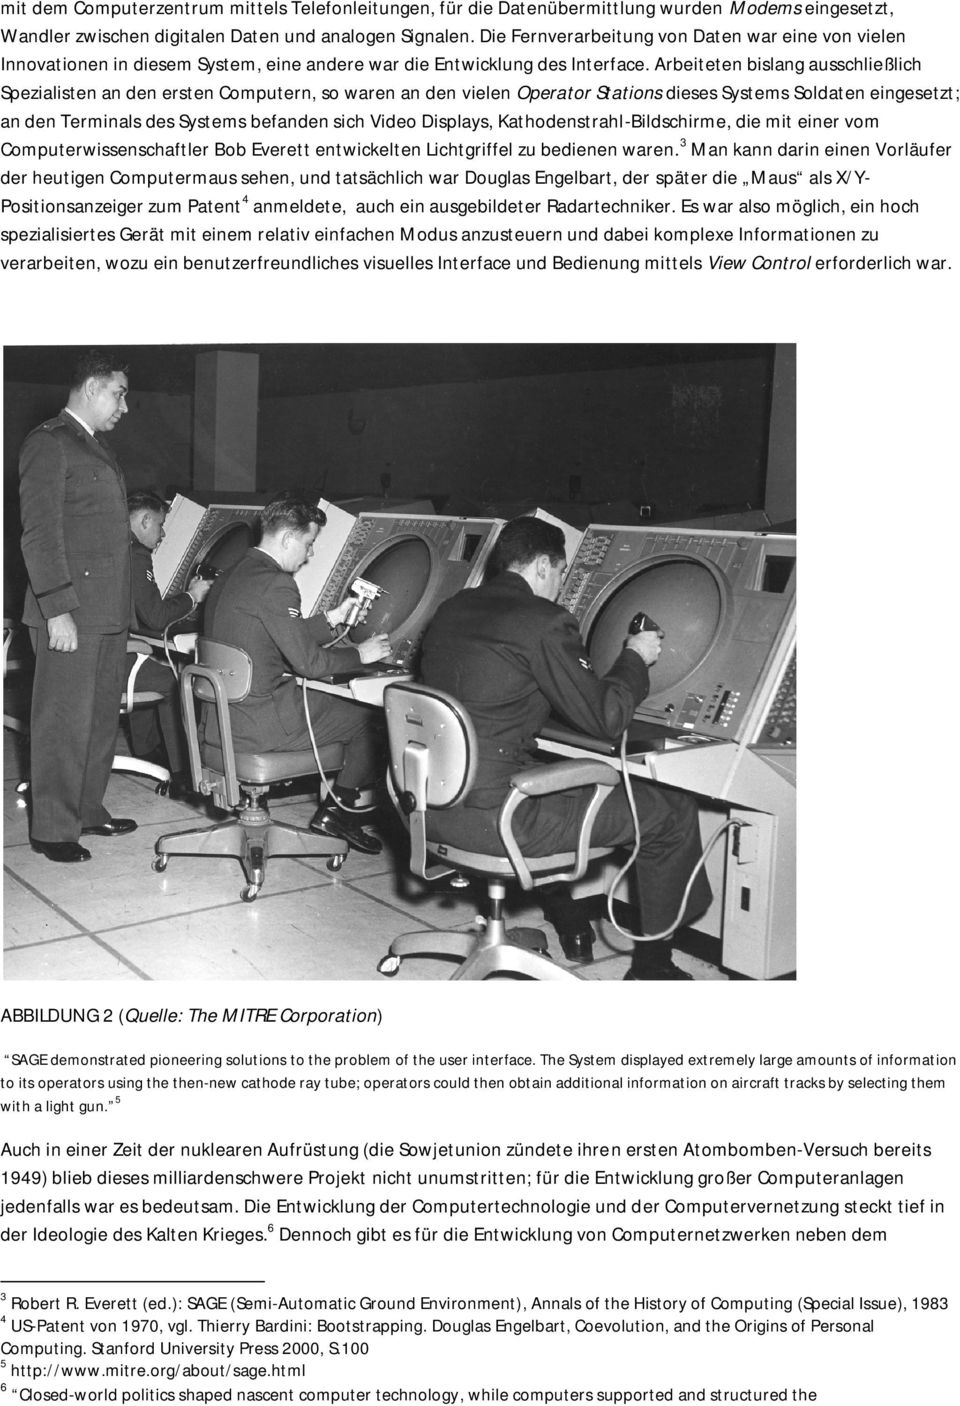 Arbeiteten bislang ausschließlich Spezialisten an den ersten Computern, so waren an den vielen Operator Stations dieses Systems Soldaten eingesetzt; an den Terminals des Systems befanden sich Video